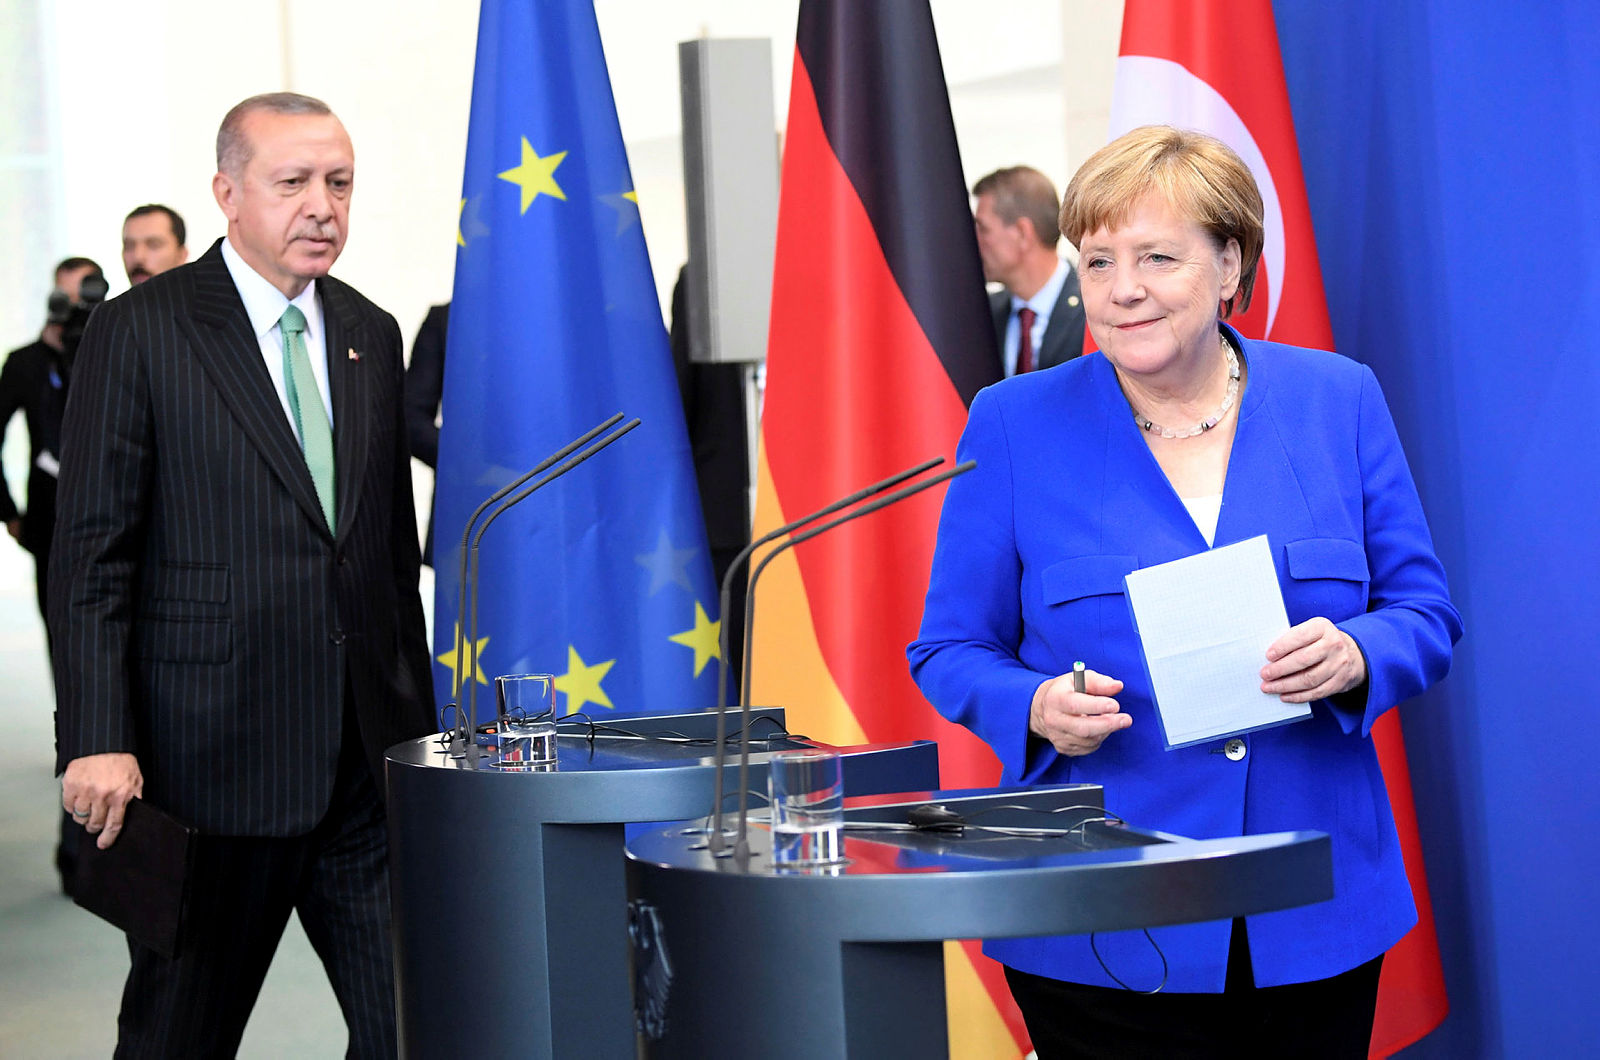 Başkan Erdoğan Merkel’in suratına açık açık söyledi: “Ne ben ne de siz…”